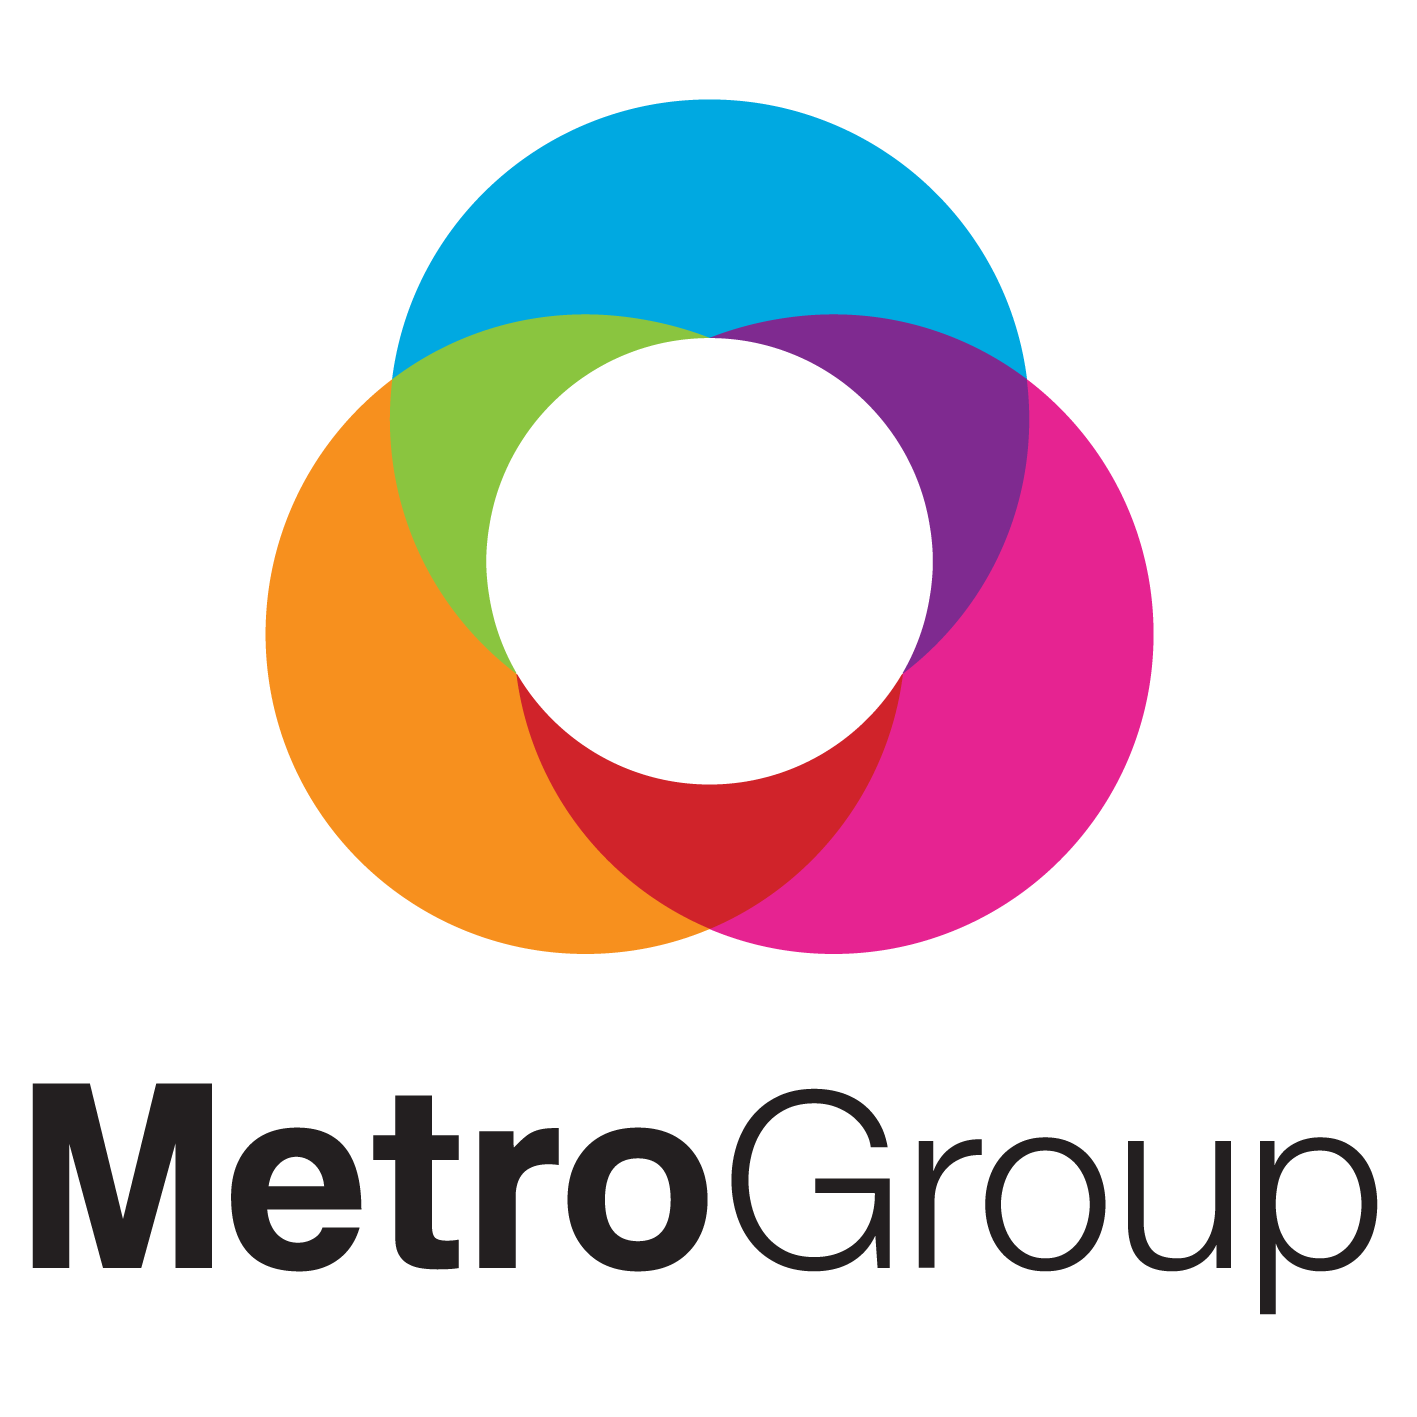 MetroGroup